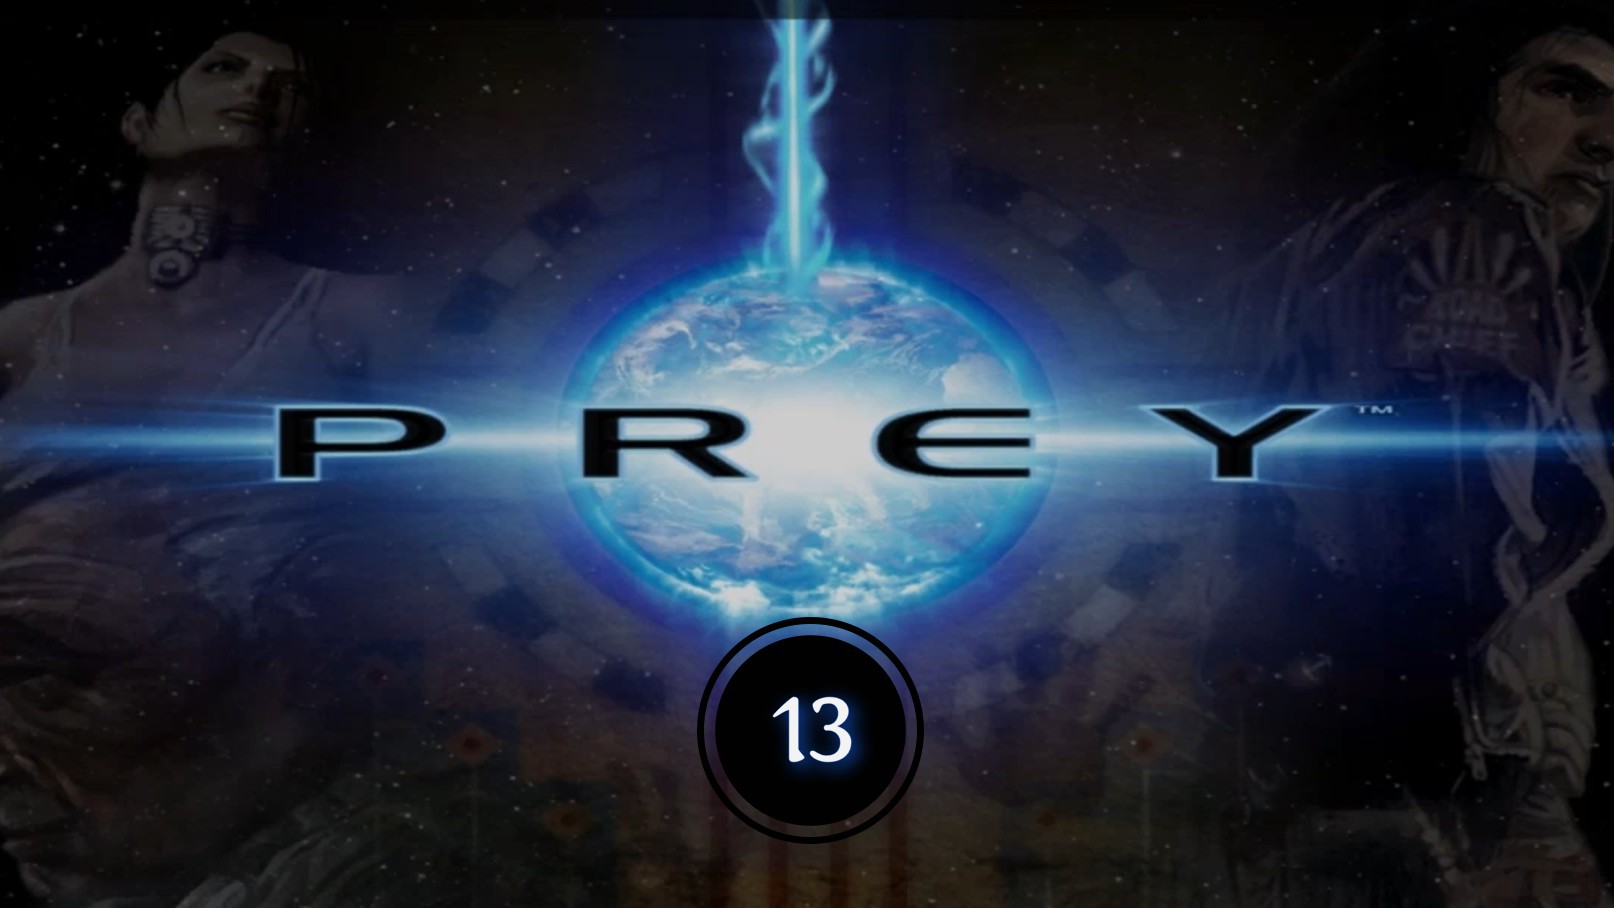 Prey (2006) 13